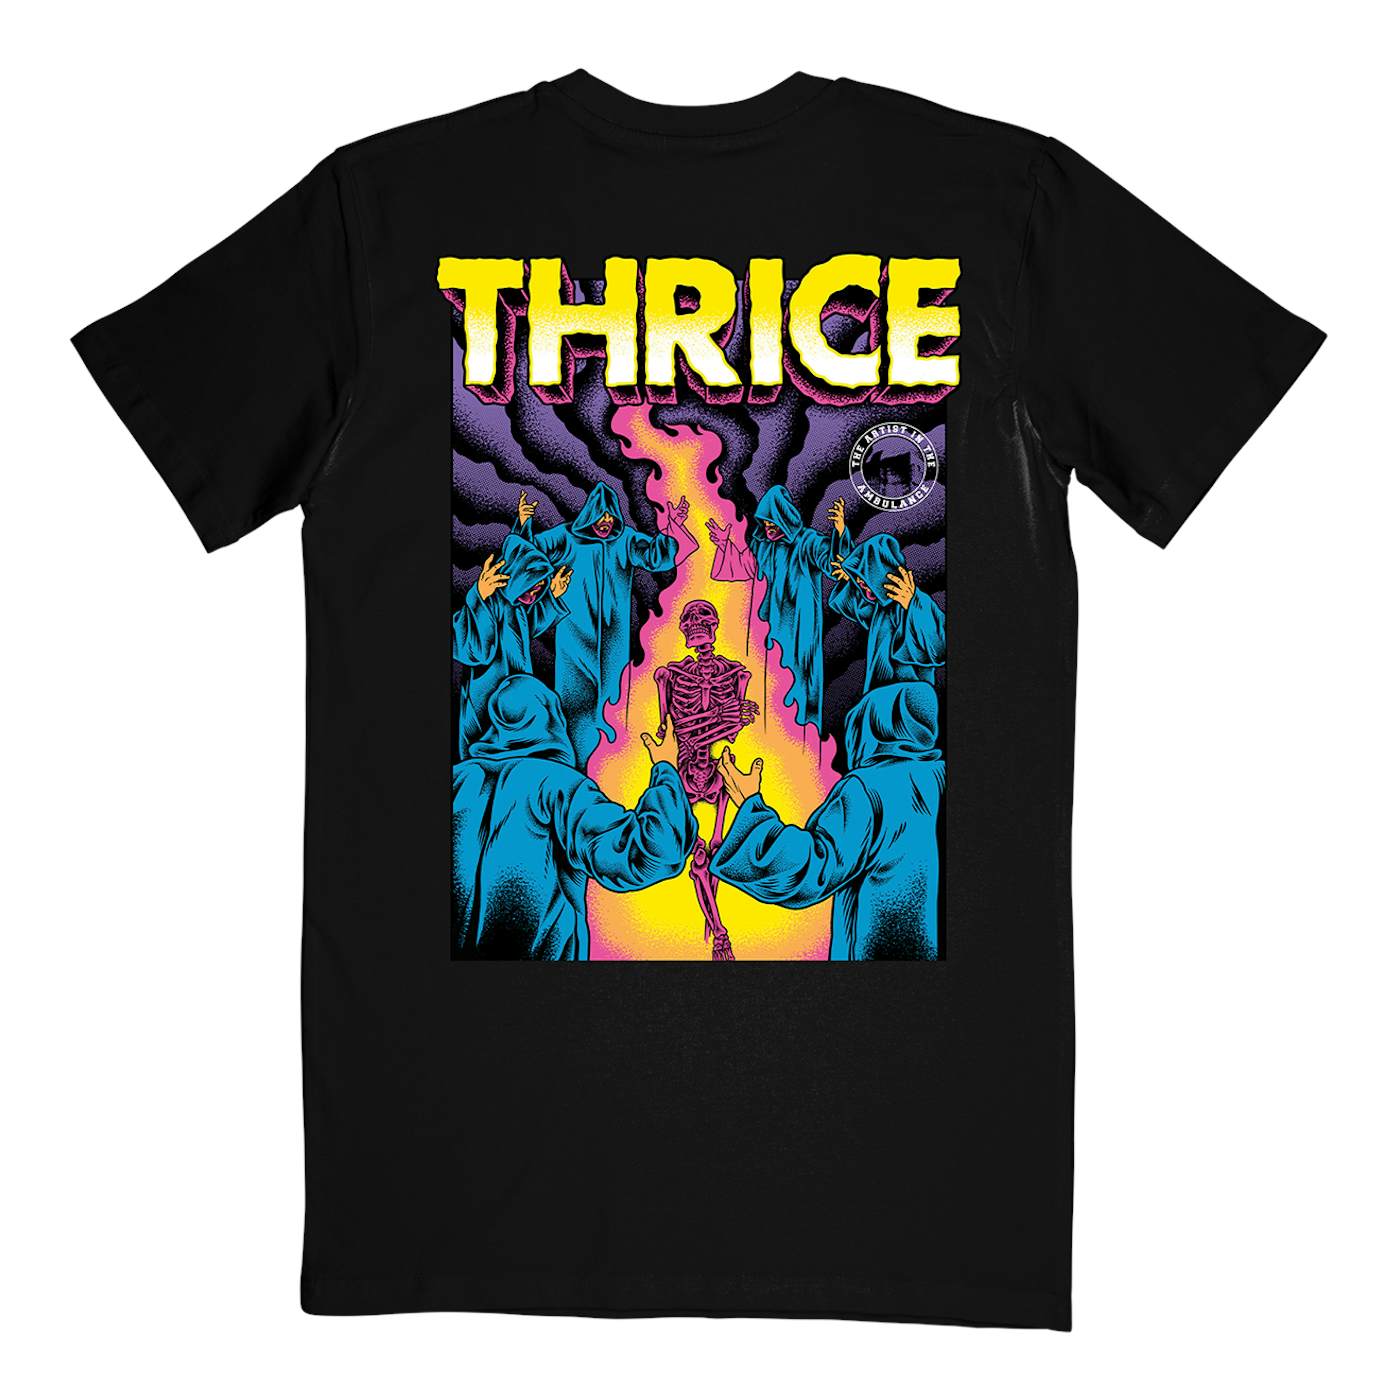 Thrice "Santa Cruz" T-Shirt